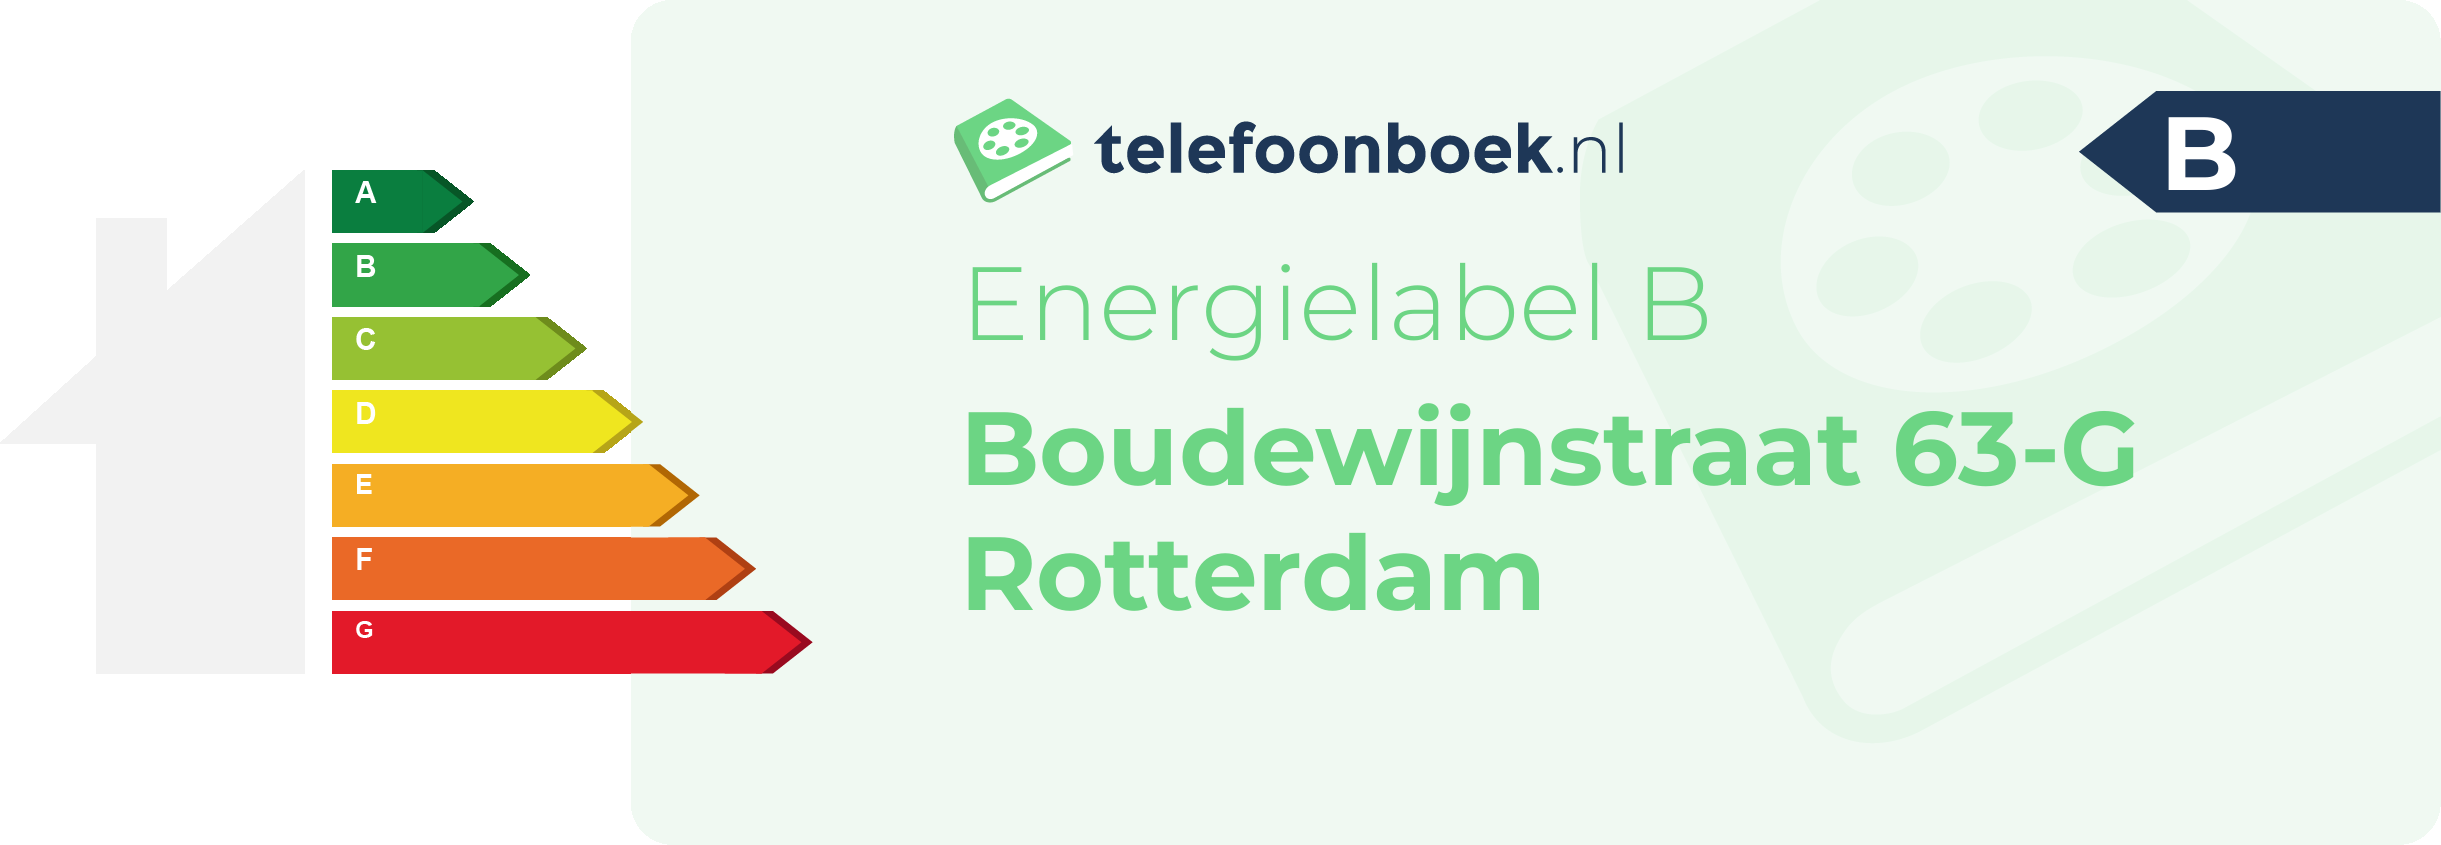 Energielabel Boudewijnstraat 63-G Rotterdam